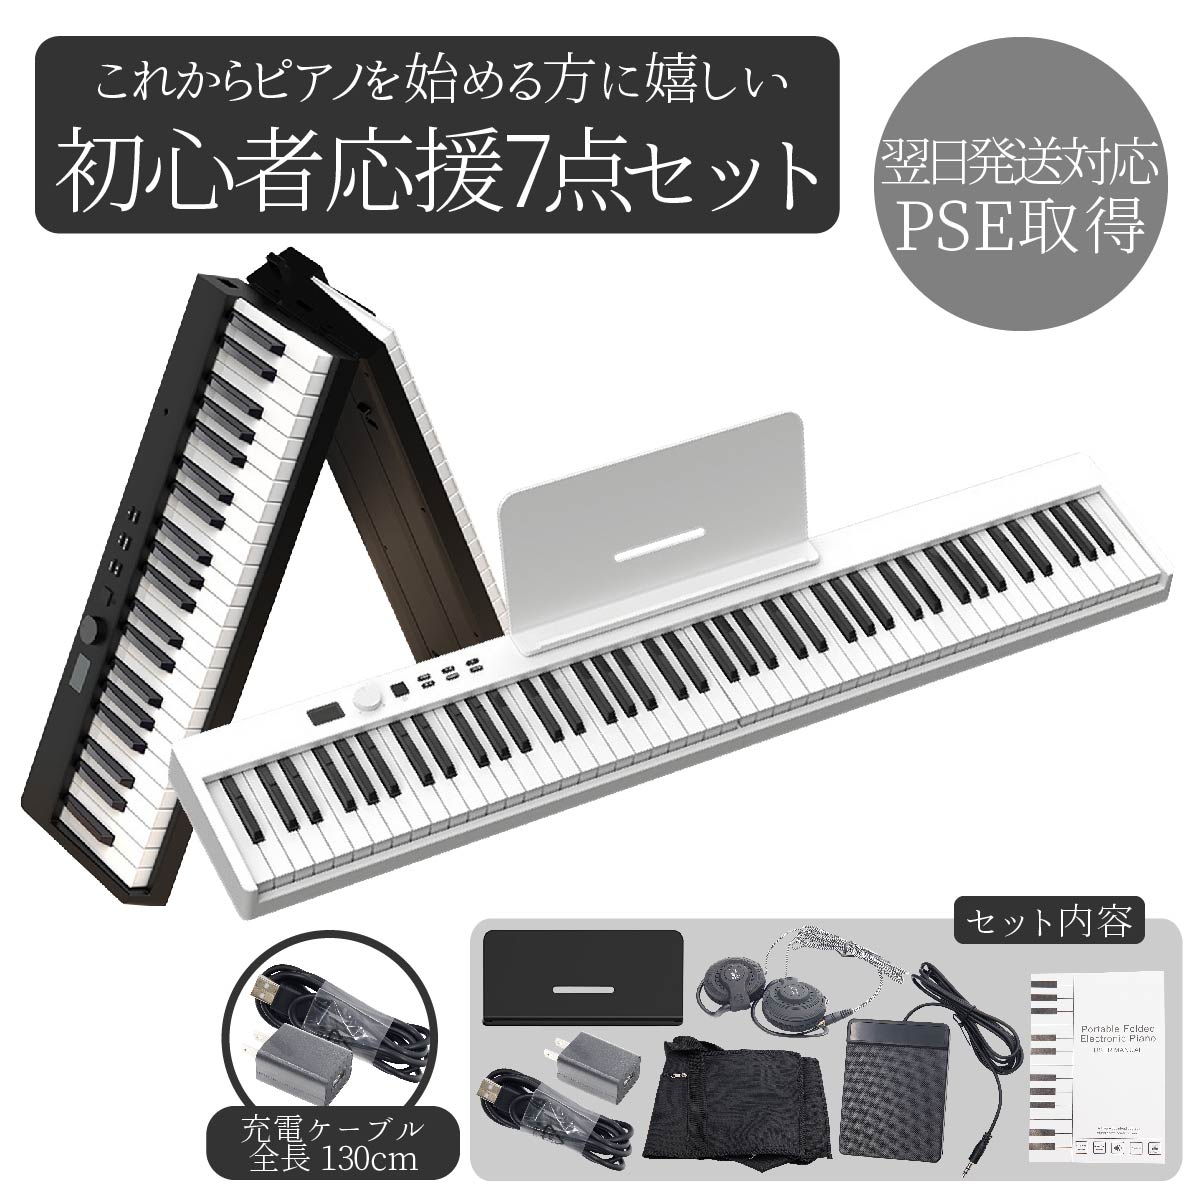 電子ピアノ 88鍵盤 初心者 ピアノ キーボード ピアノデビュー MIDI 